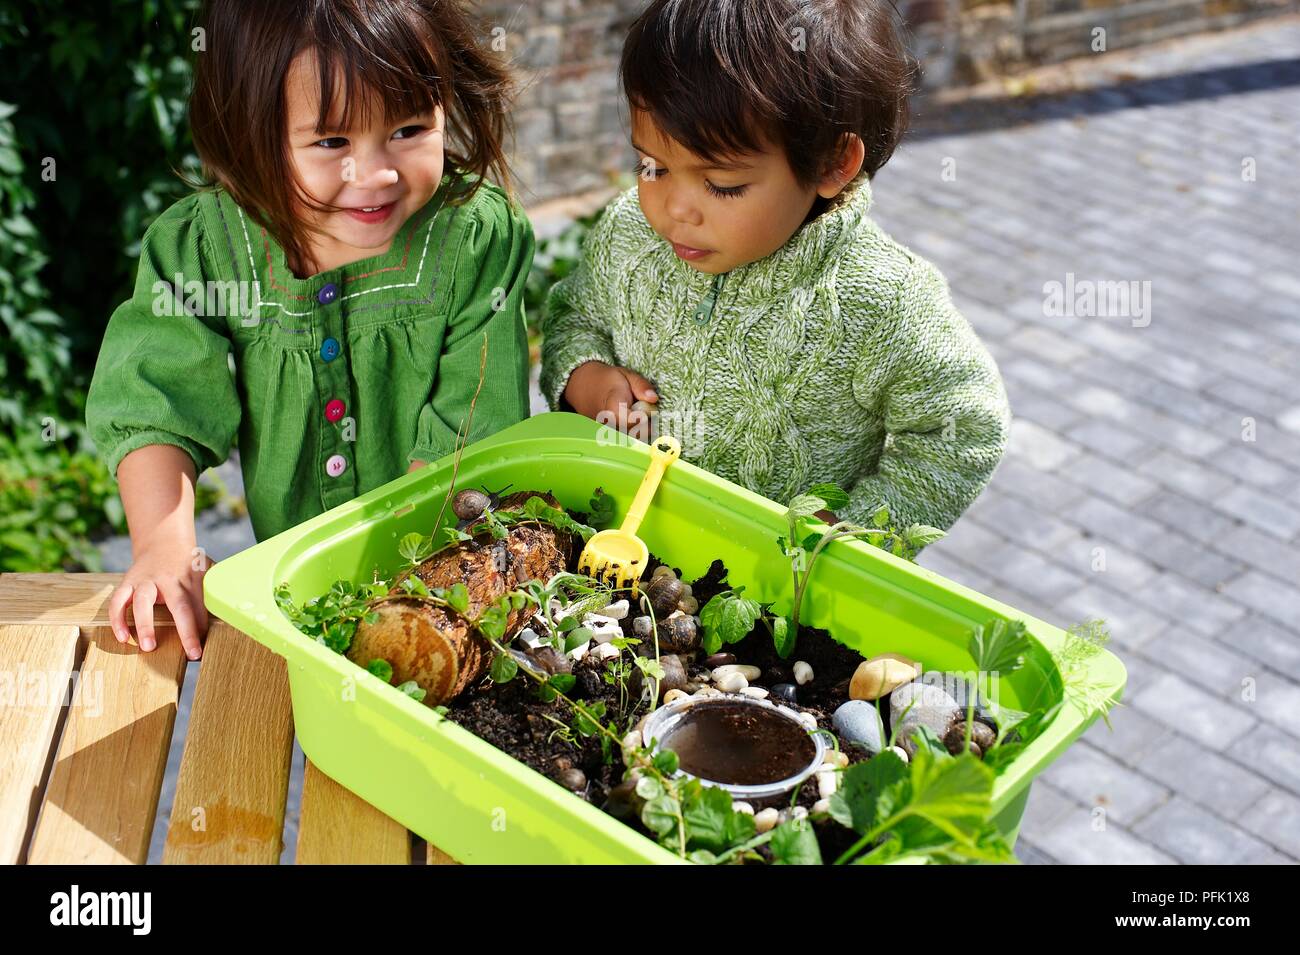 Ragazzo e una ragazza in piedi accanto al giardino in miniatura cresciuto nel vassoio di plastica Foto Stock